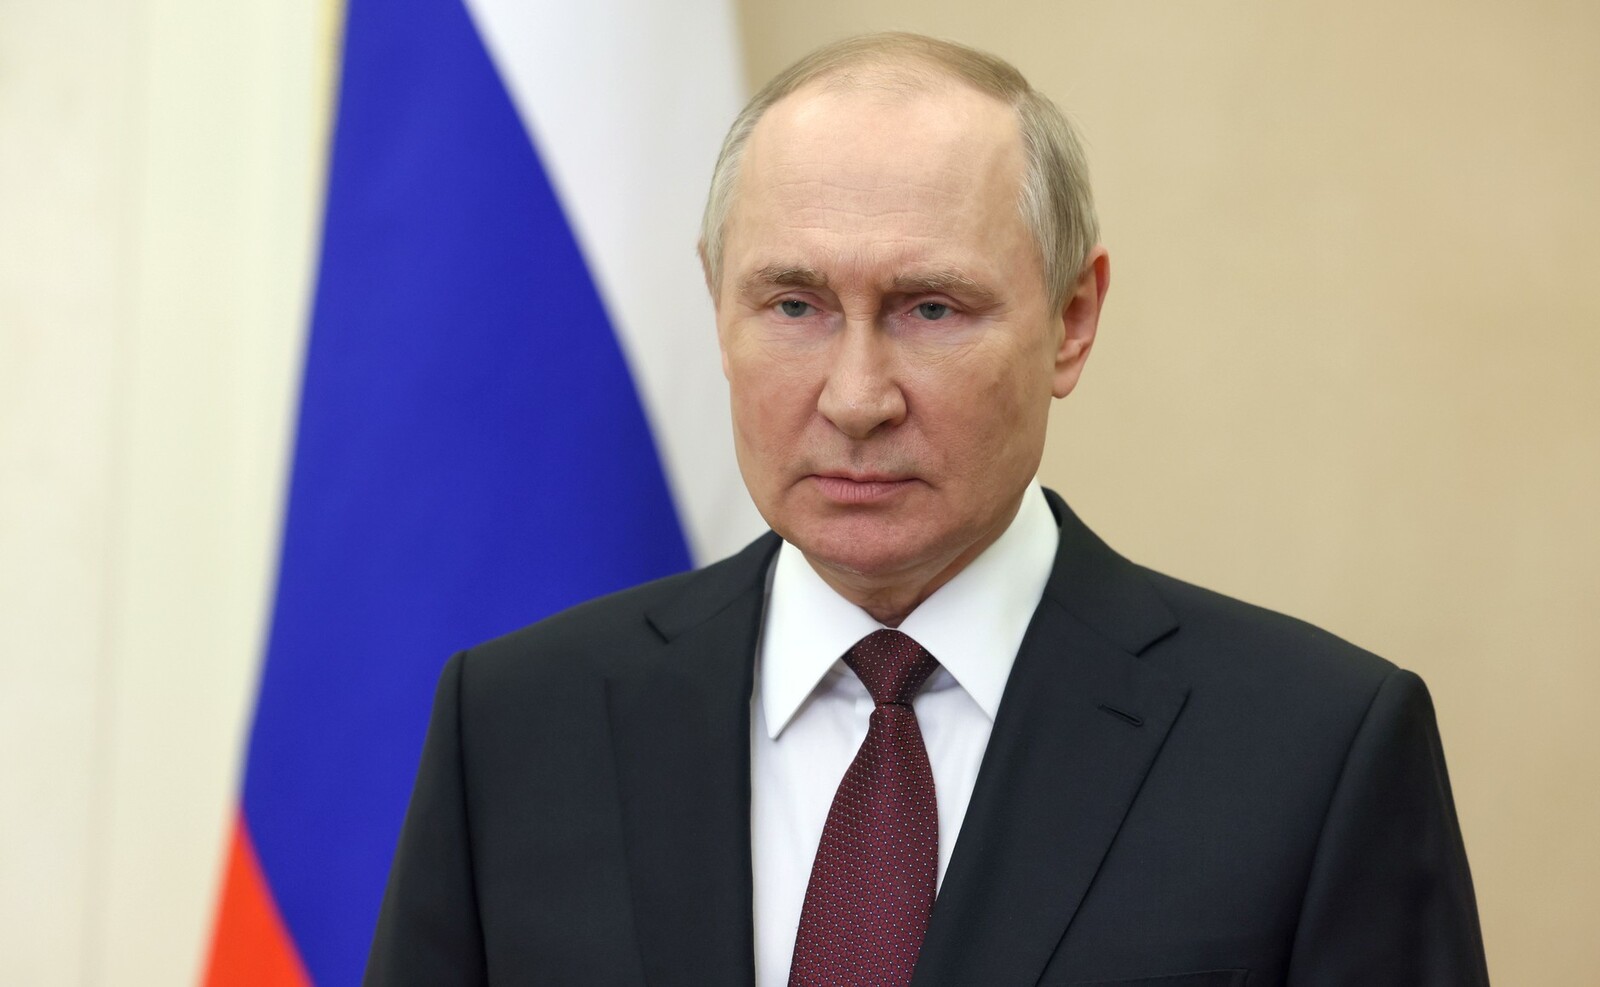 24–25 мая Владимир Путин примет участие в мероприятиях саммита Евразийского экономического союза в Москве